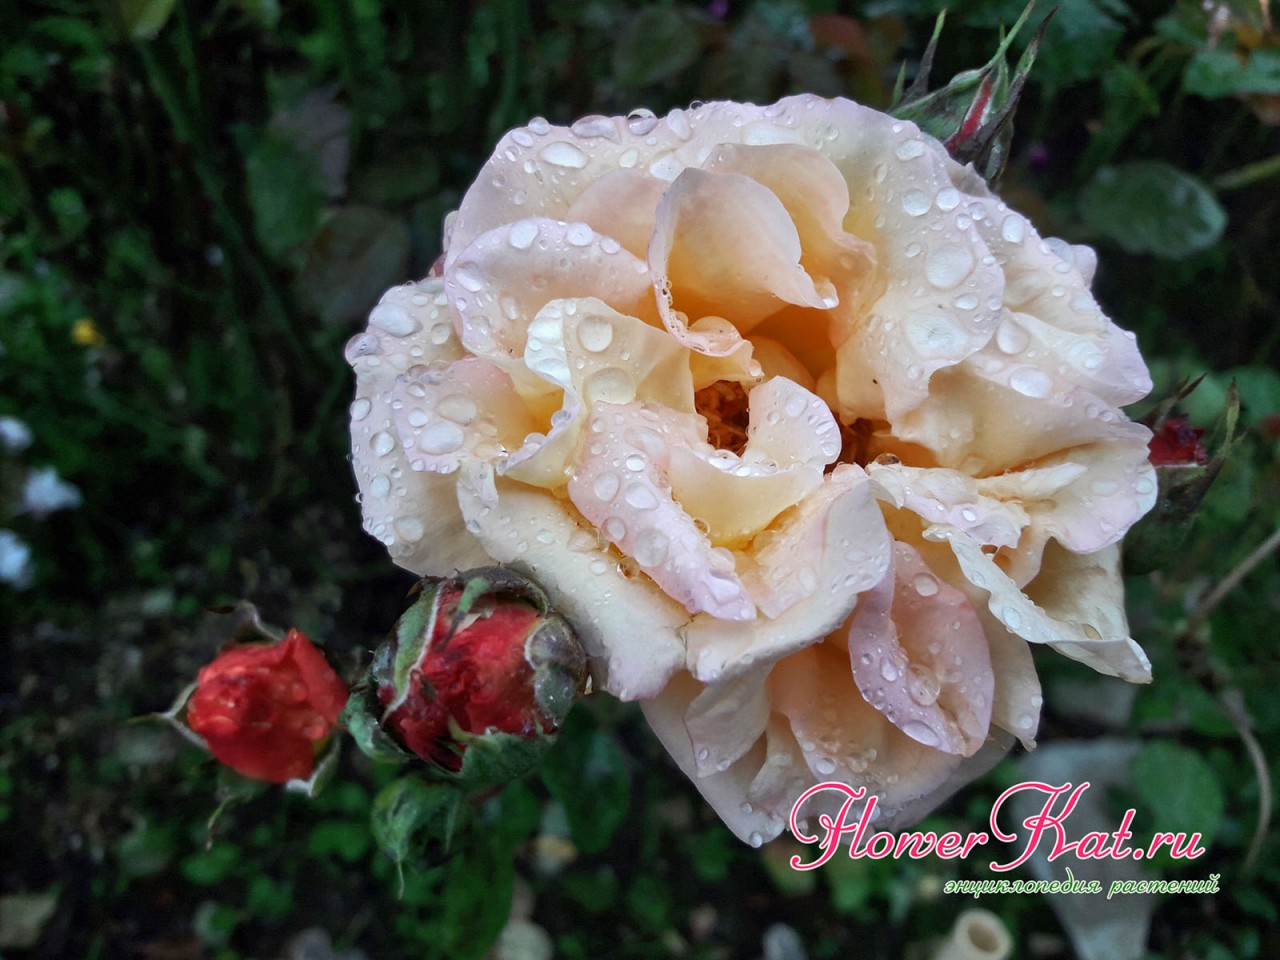 Проявление бежевых оттенков на лепестках розы Карамелла к концу срока цветения - фотографии